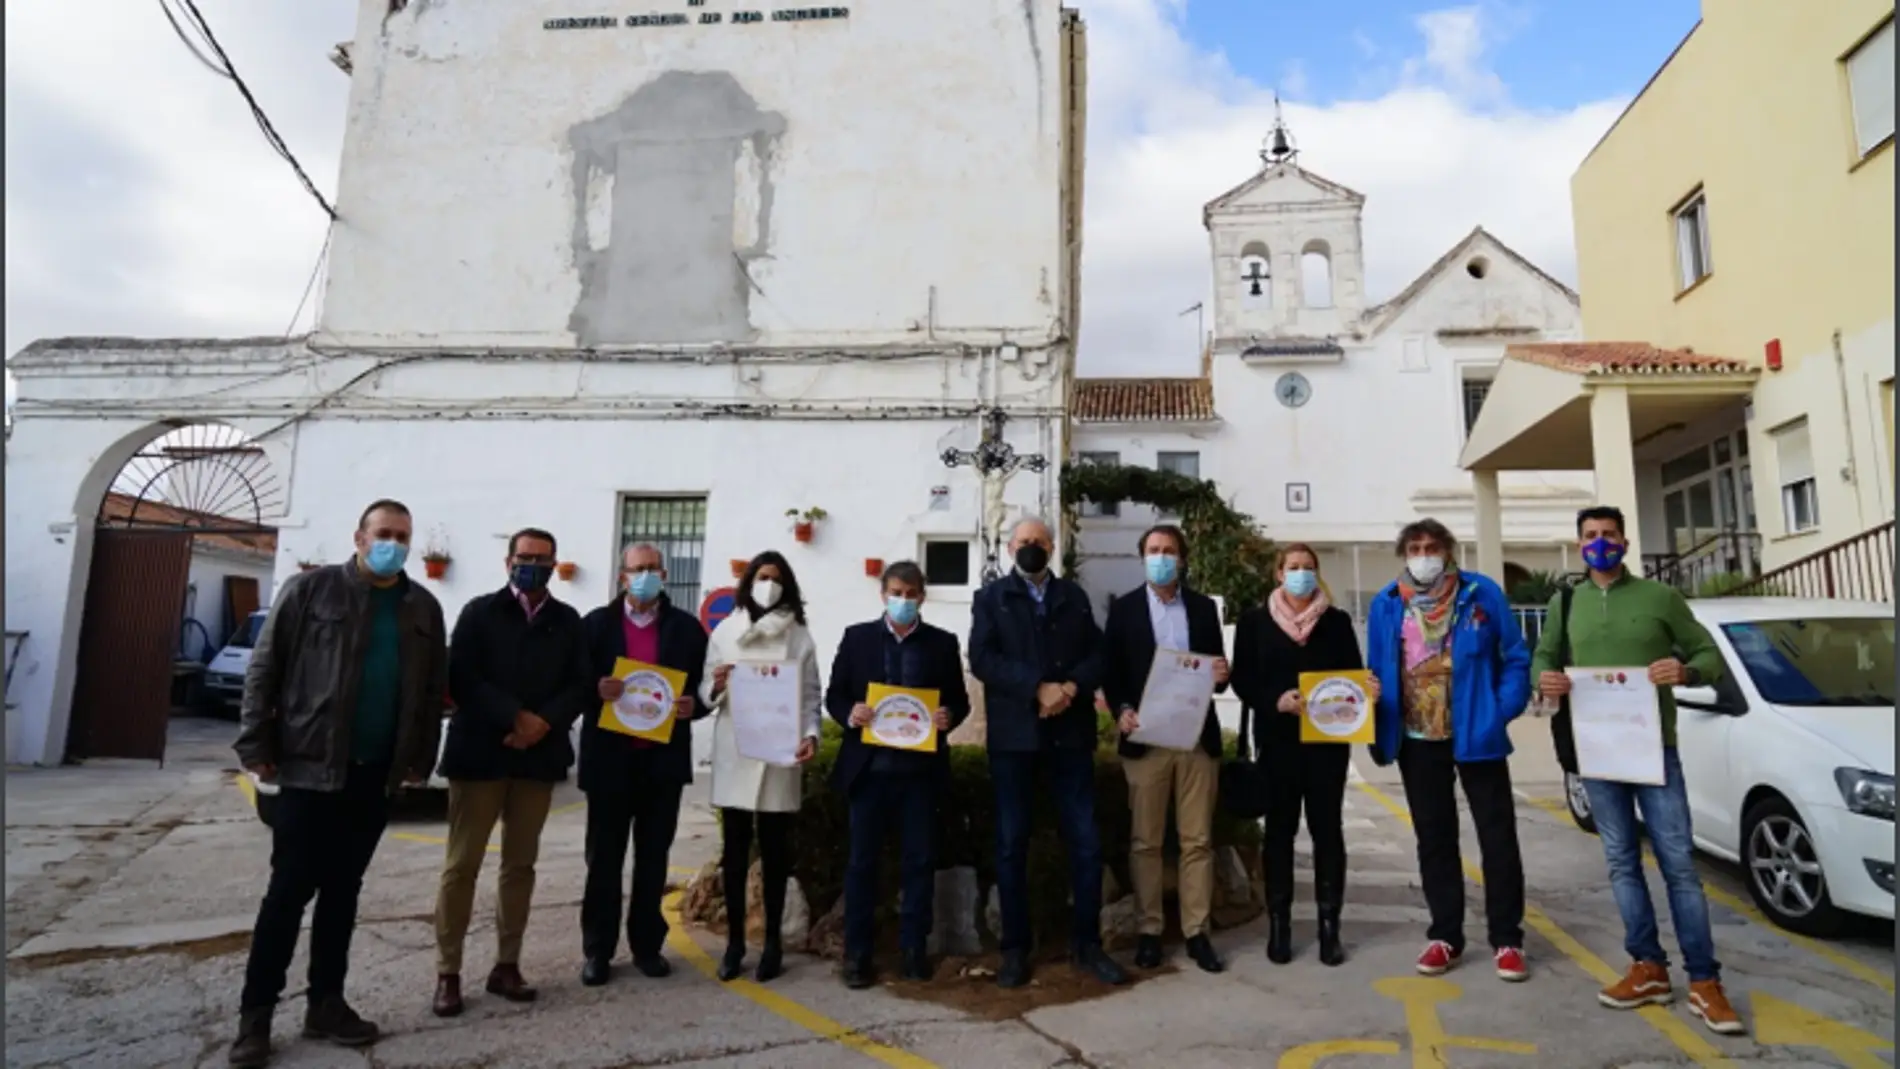 La “Operación Abuelo” atenderá las ilusiones de más de 300 abuelos en Málaga